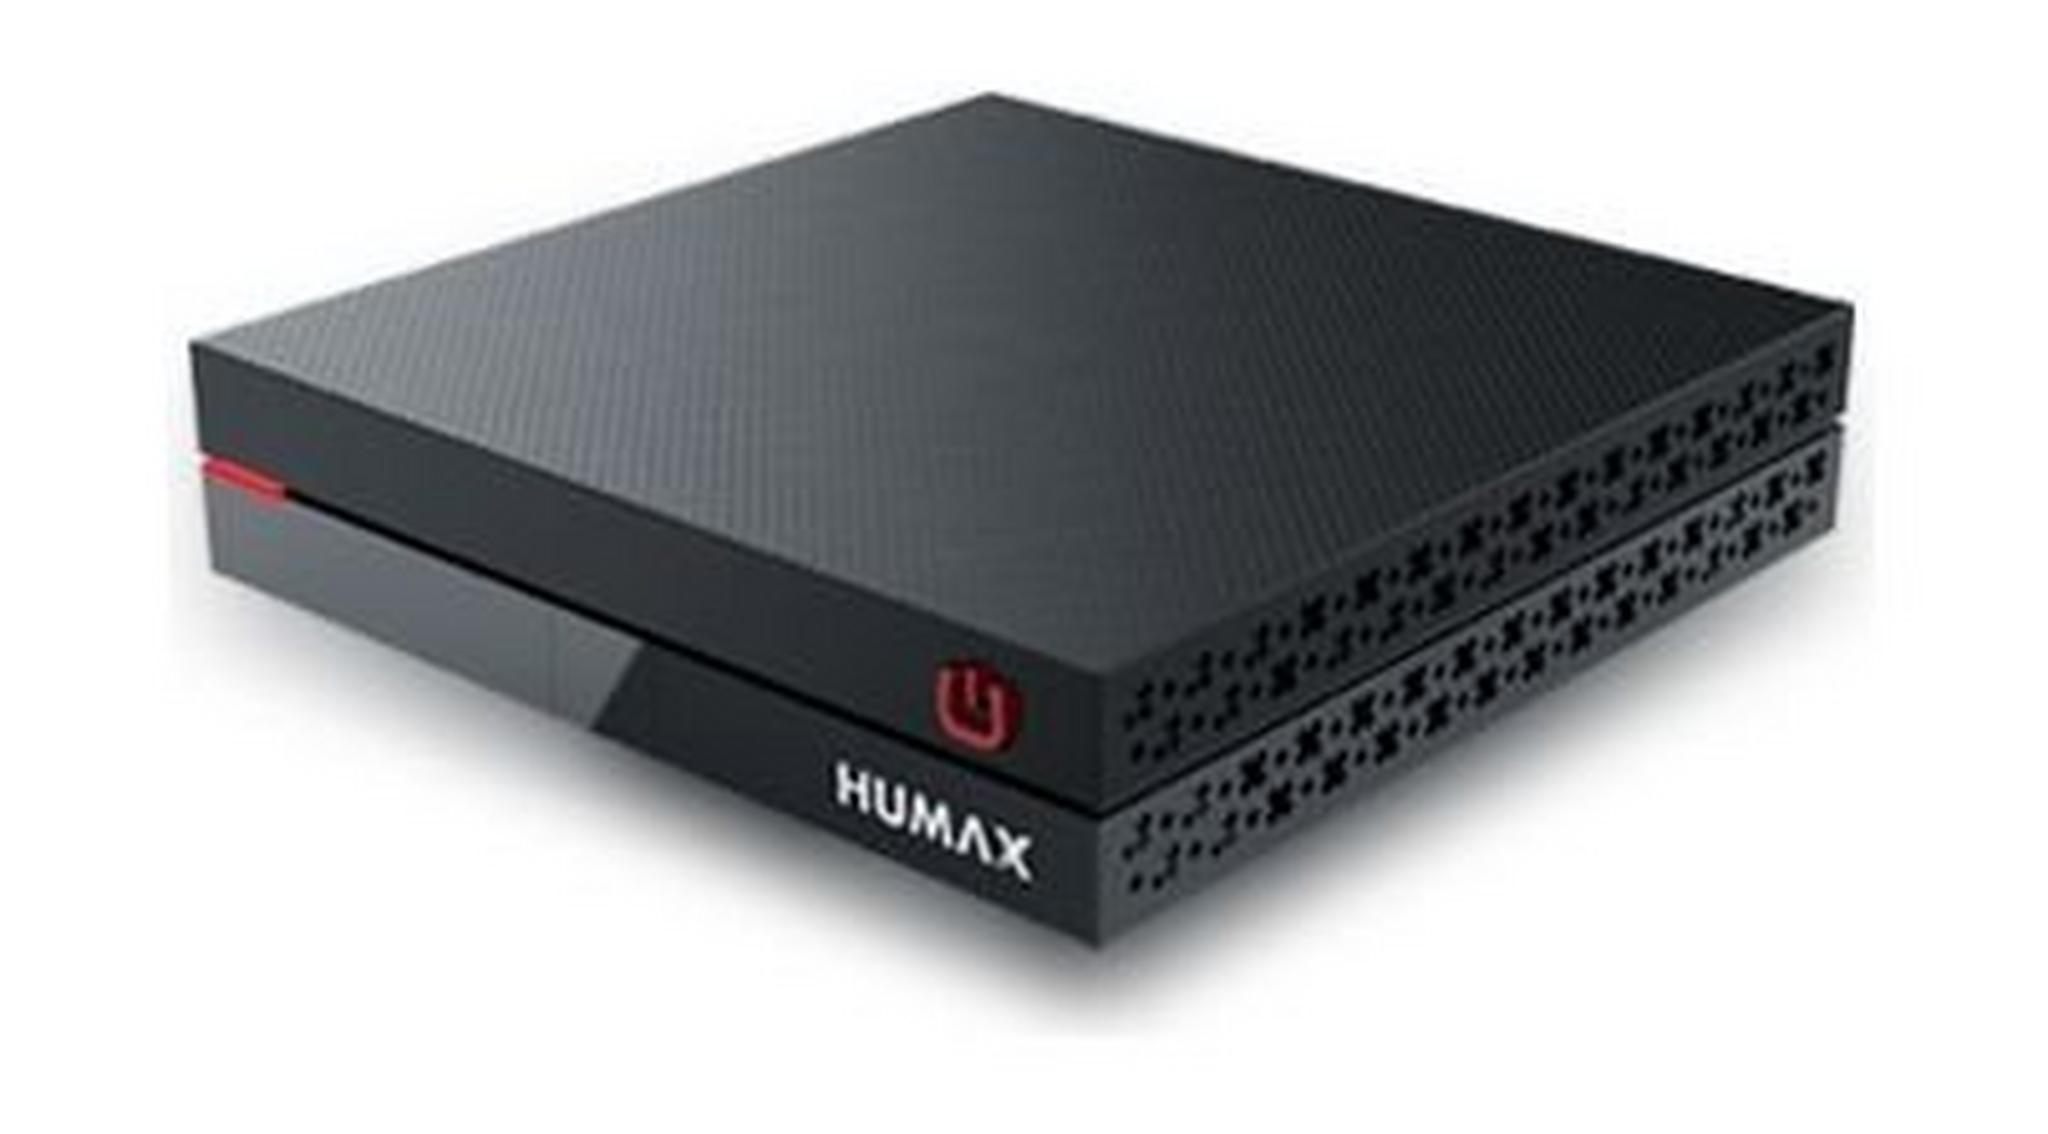 Humax HD Digital Satellite Receiver - F1 Mini